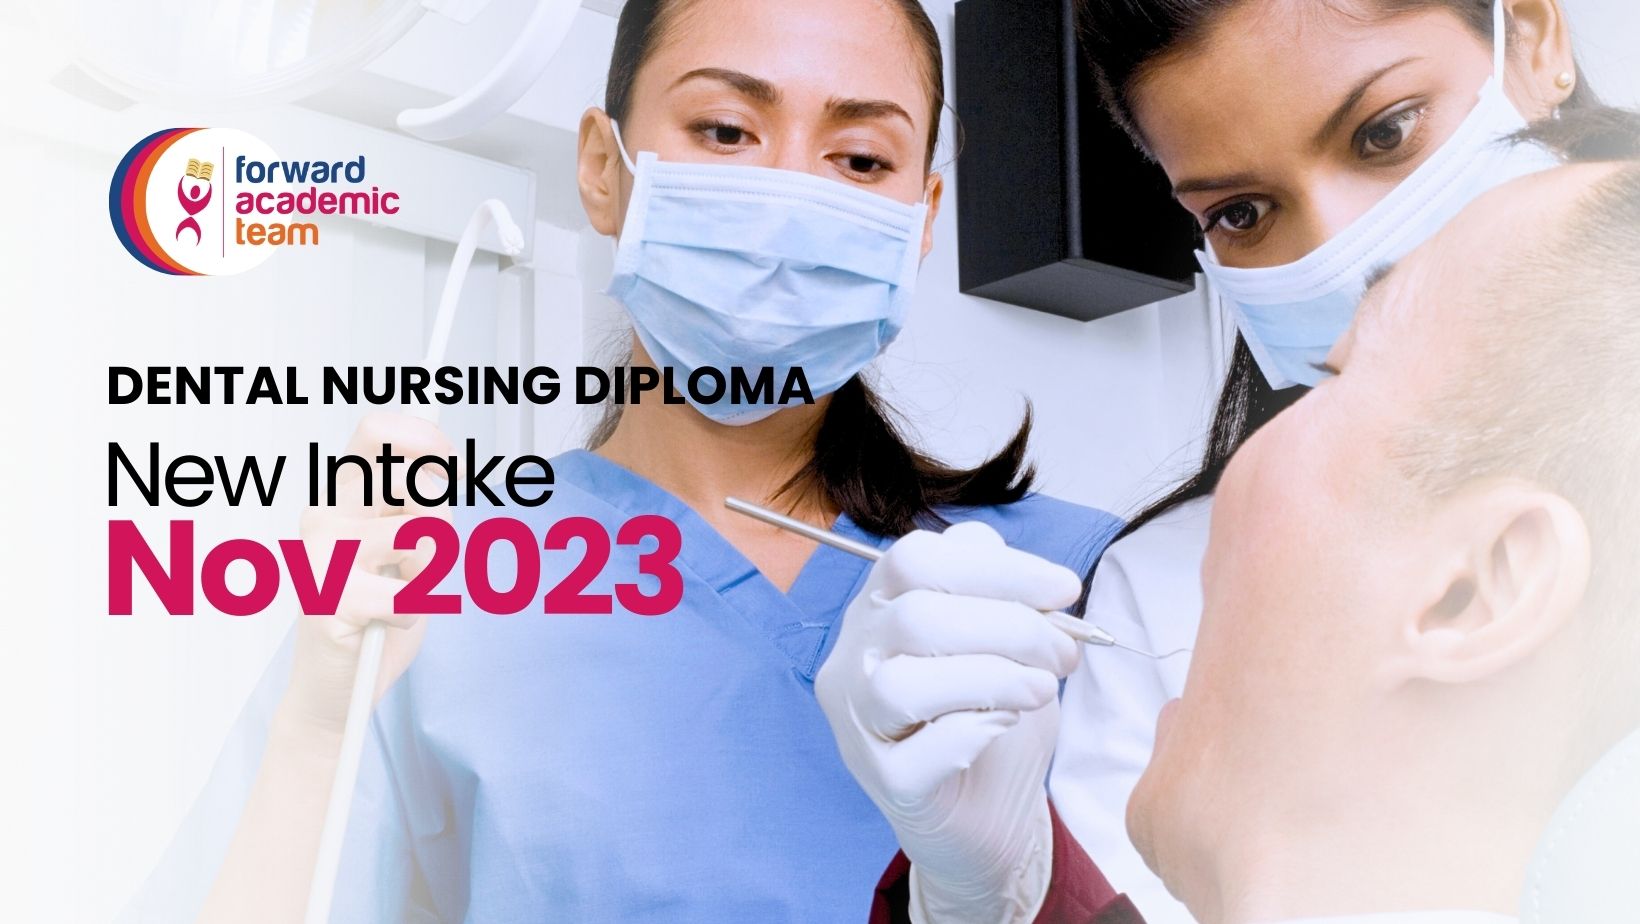 Dental Nursing Diploma - Nov 2023 Intake